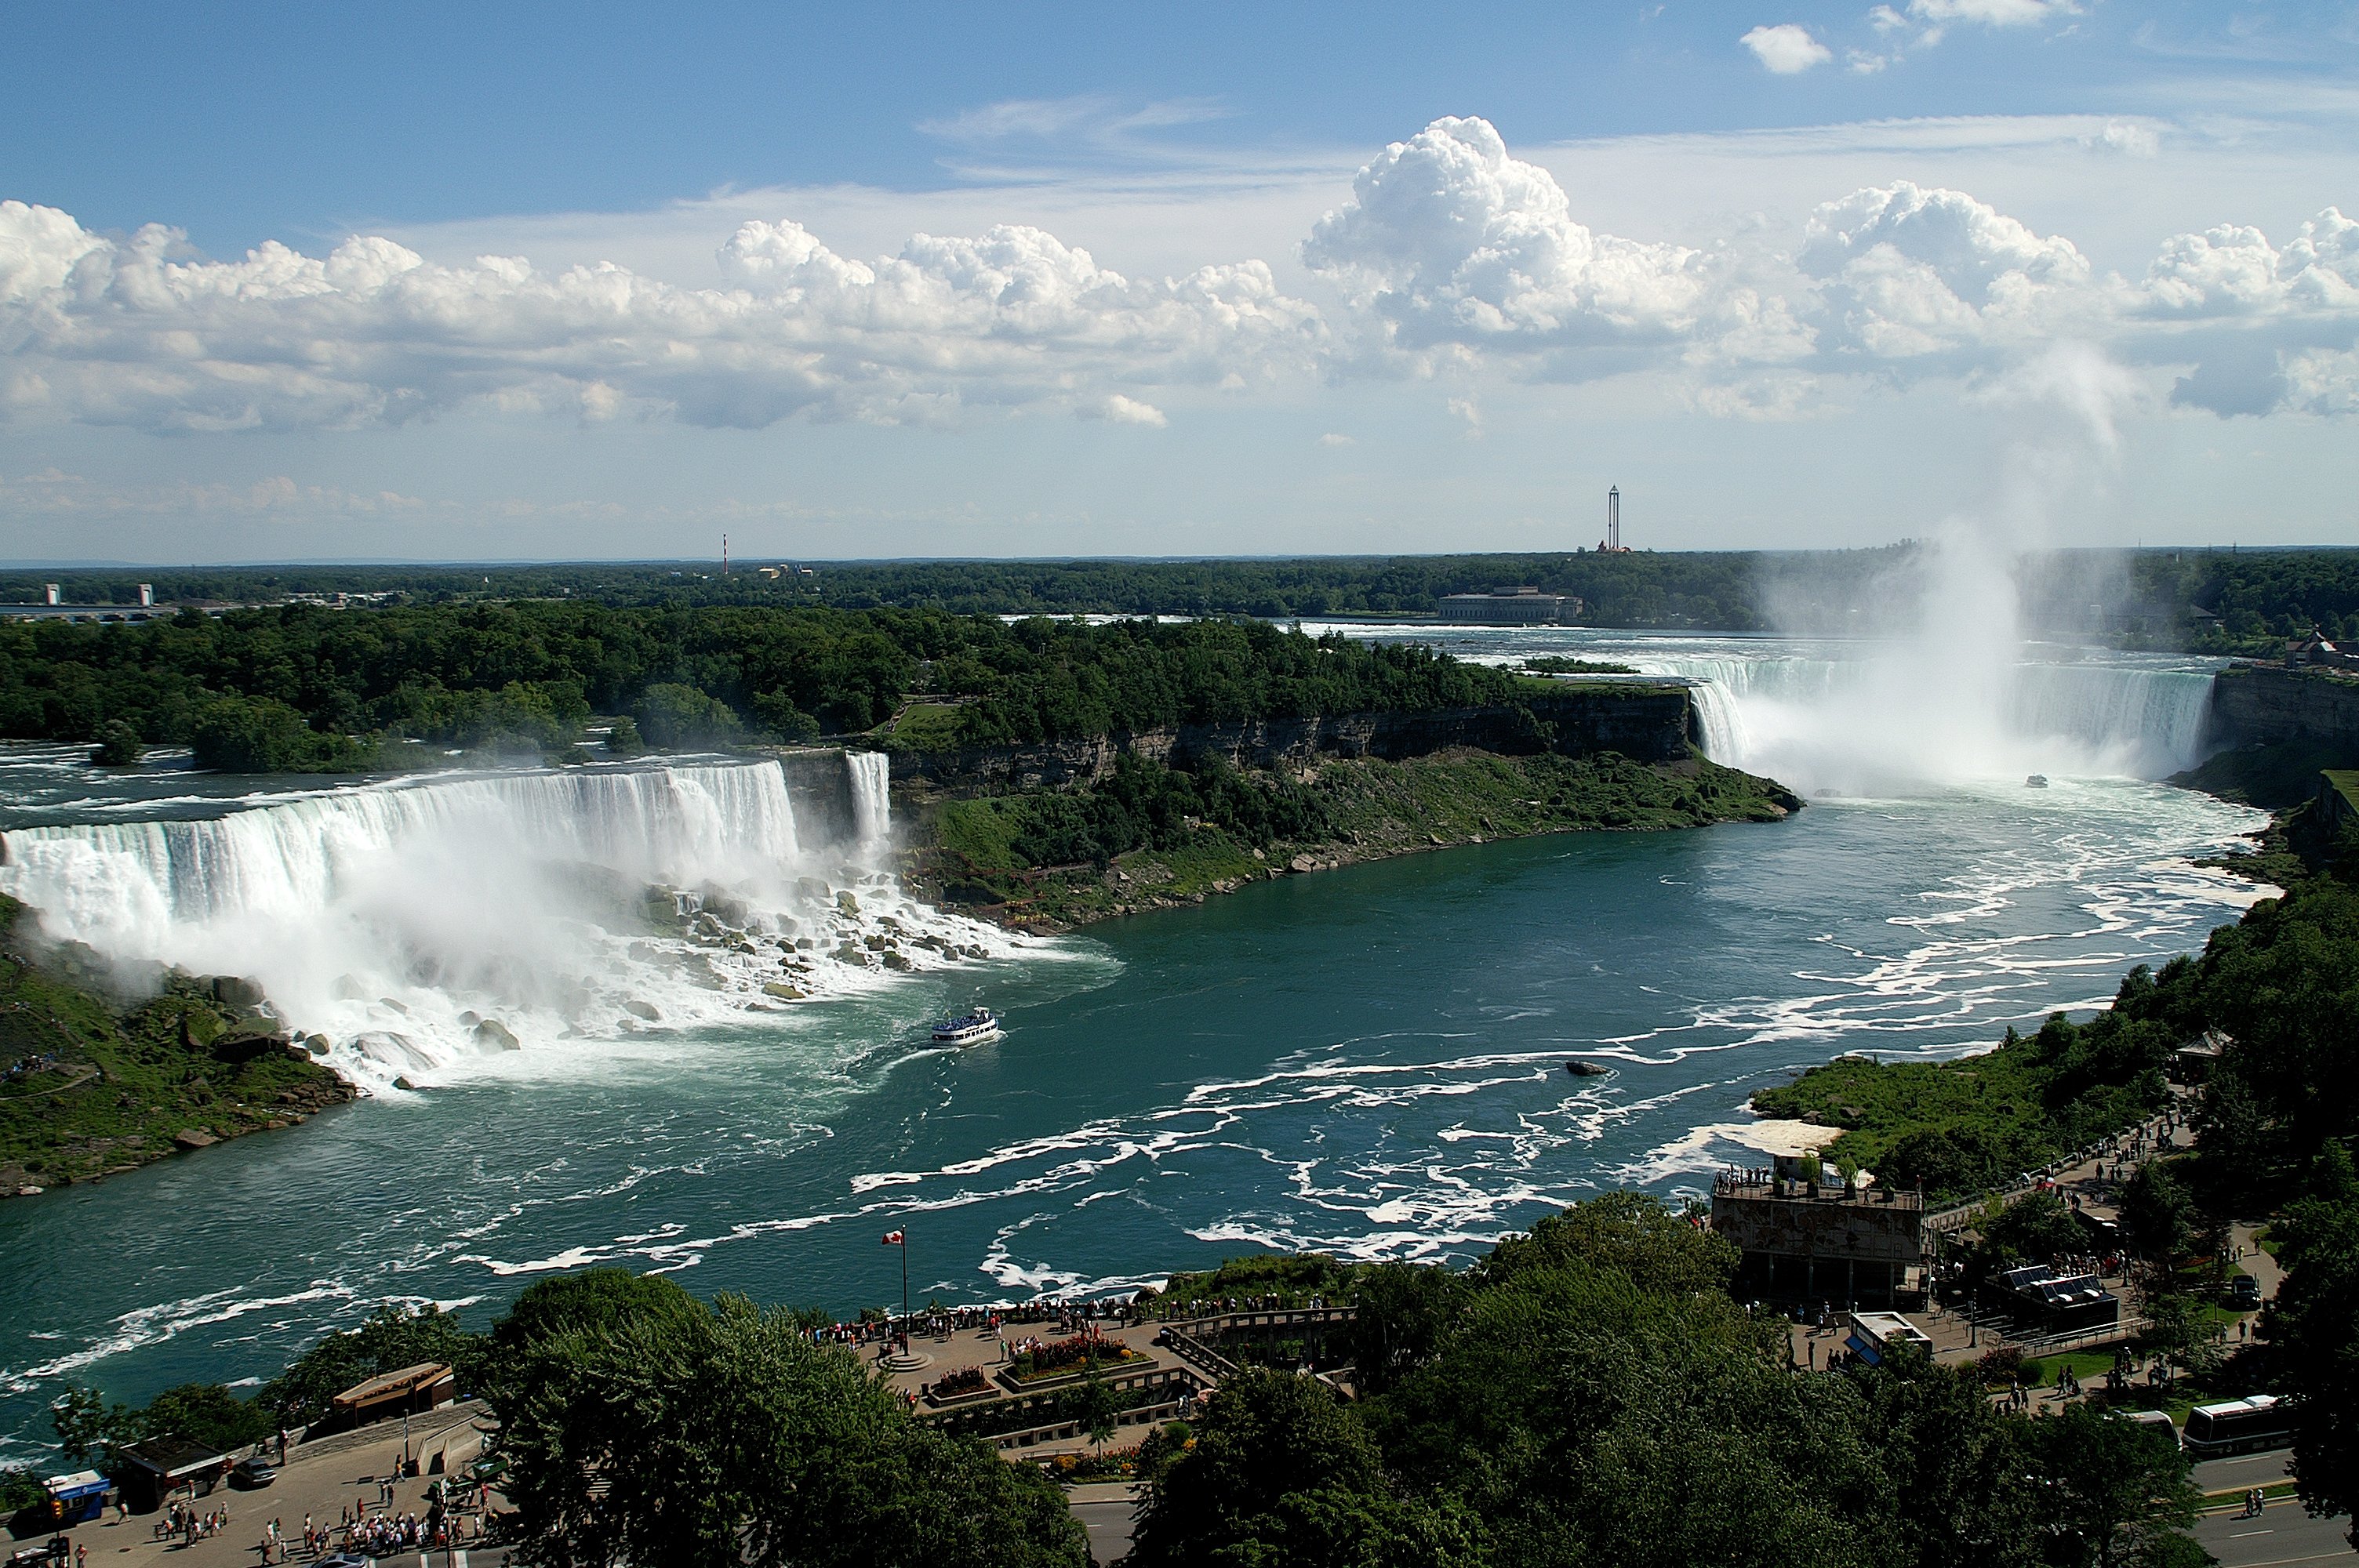 Such as the depth of Niagara Falls in Ontario